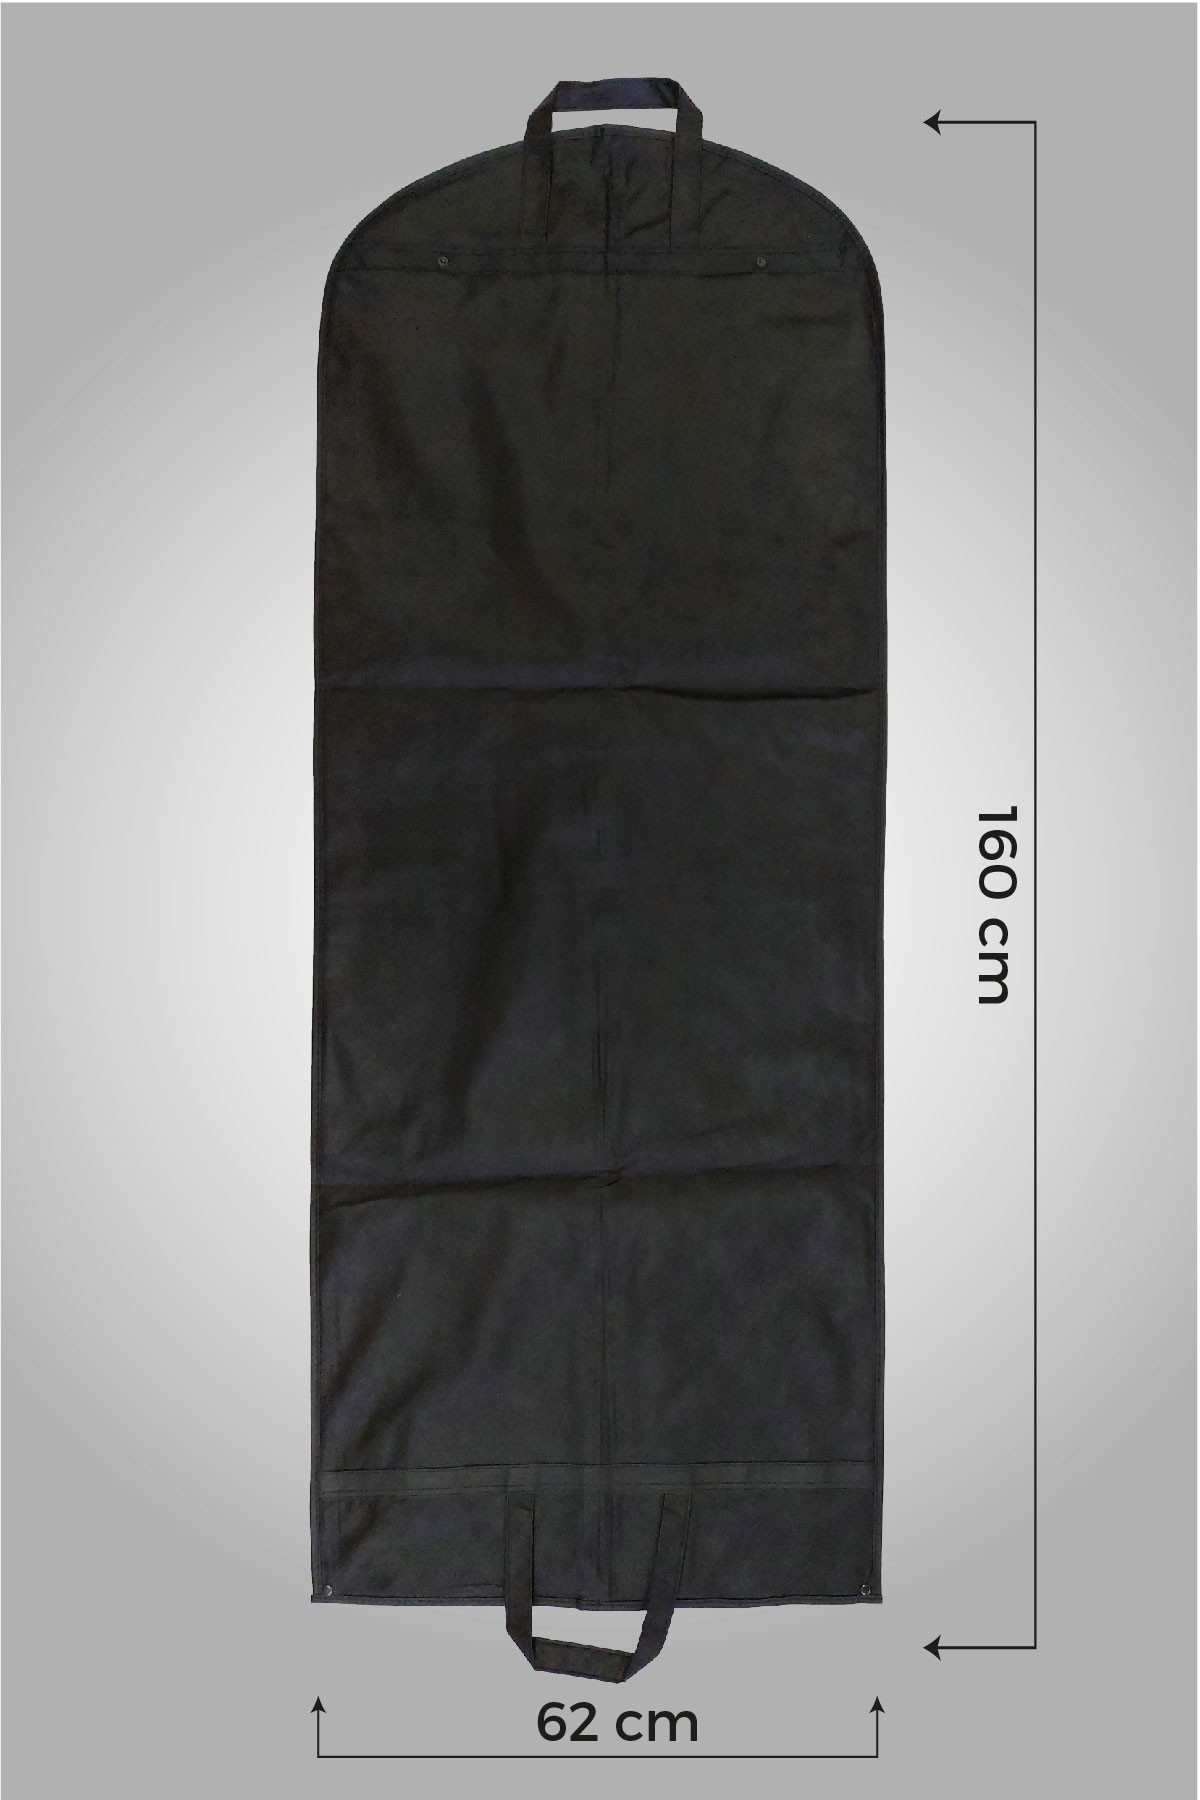 Kulplu Çıtçıtlı Siyah Gamboç Abiye - Gelinlik - Elbise Kılıfı 62 x 160cm. 5 Adet